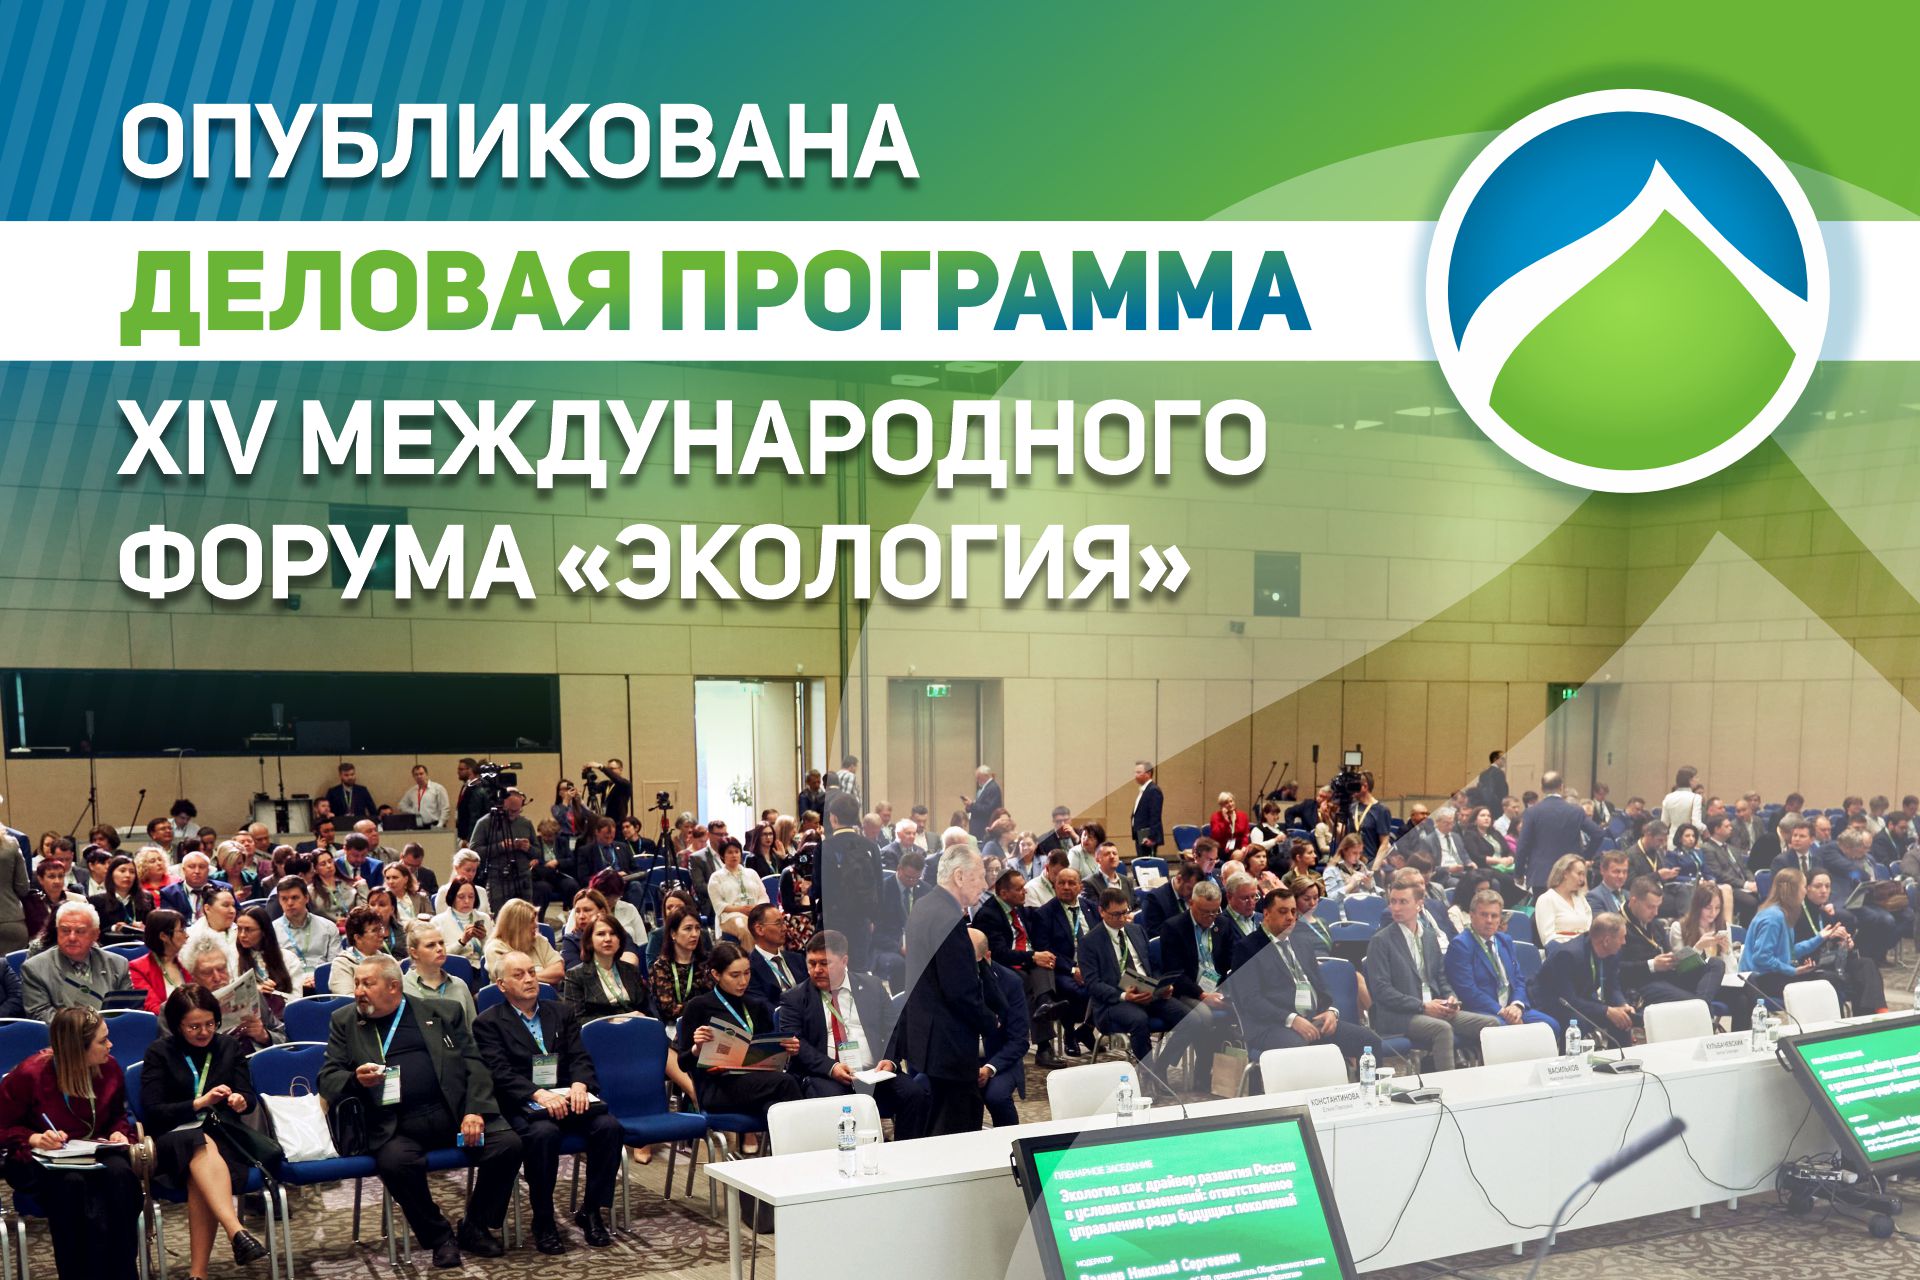 Главным событием Дня эколога в России станет Форум «Экология» 